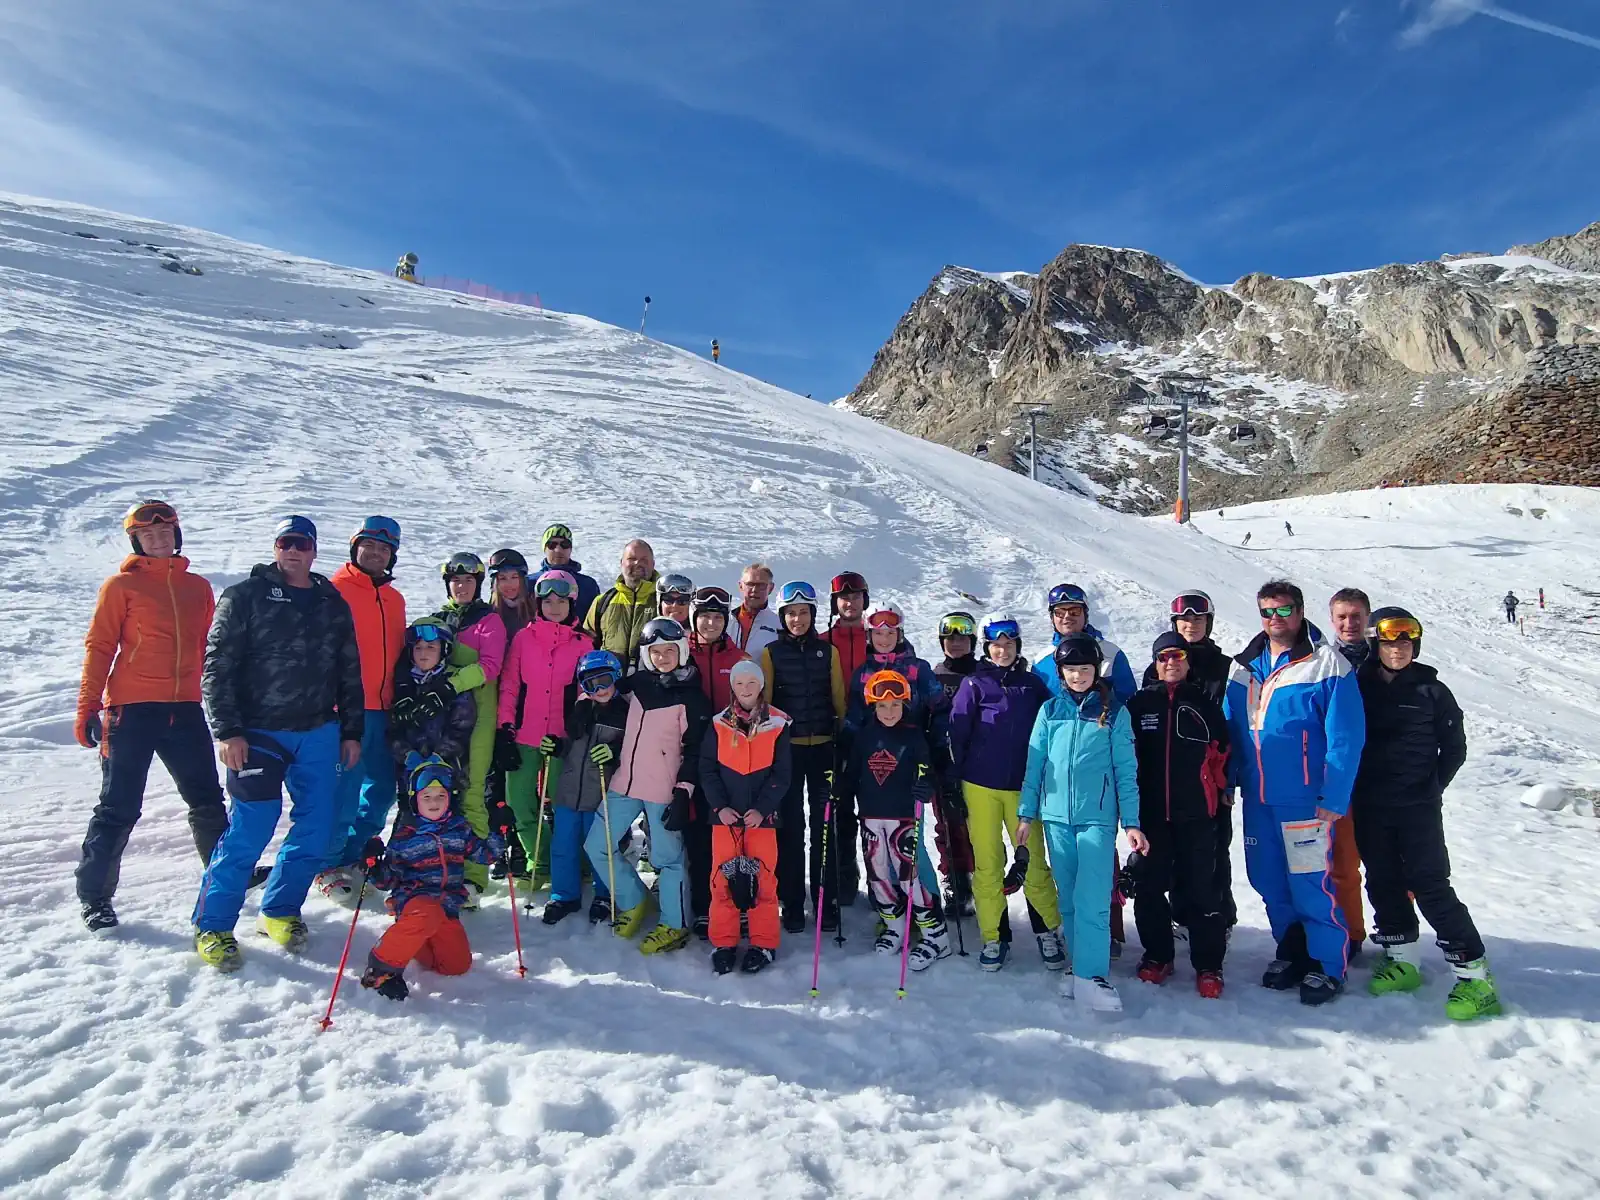 34 Skifreunde vom FC Chammünster starteten in eine ungewisse Wintersaison bei ihrem traditionellen Saisonauftakt in Sölden.